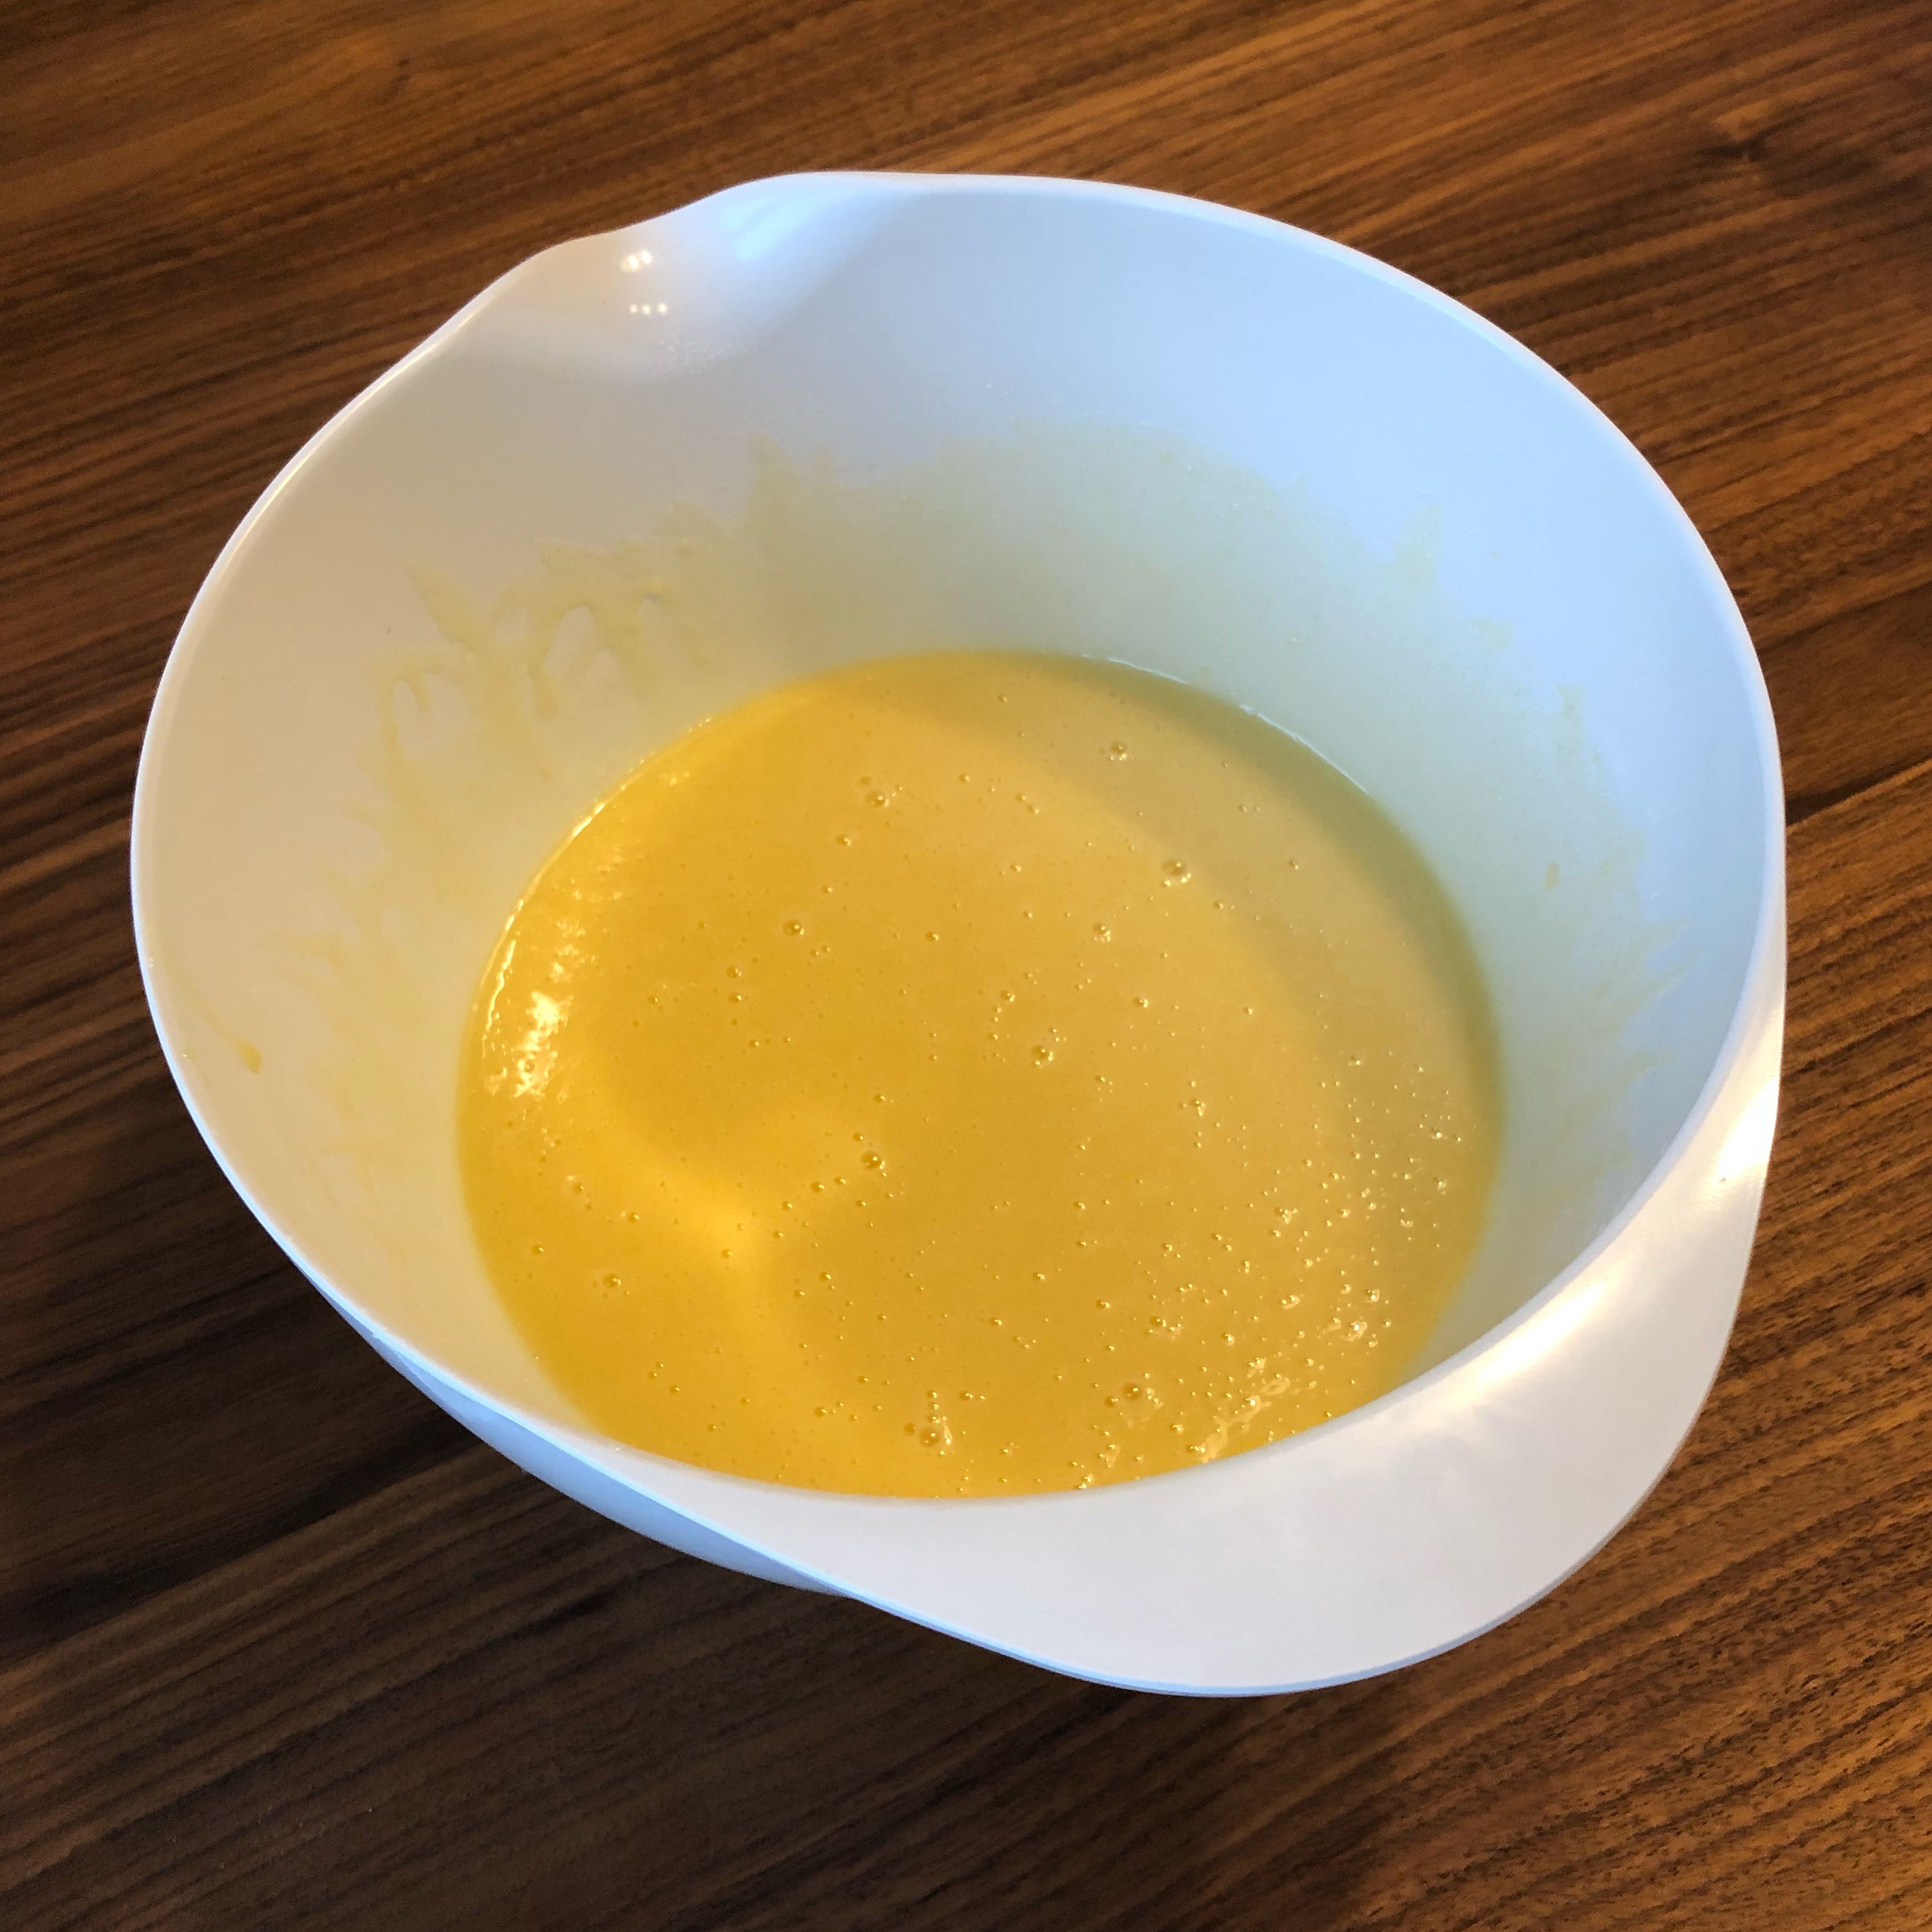 Den Ofen auf 180° vorheizen. Die Butter in einem Topf schmelzen. Danach Eier, Zucker, Backpulver, Vanillezucker, Milch, Weizenmehl und die geschmolzene Butter in eine Rührschüssel geben und zu einem glatten Teig verrühren.